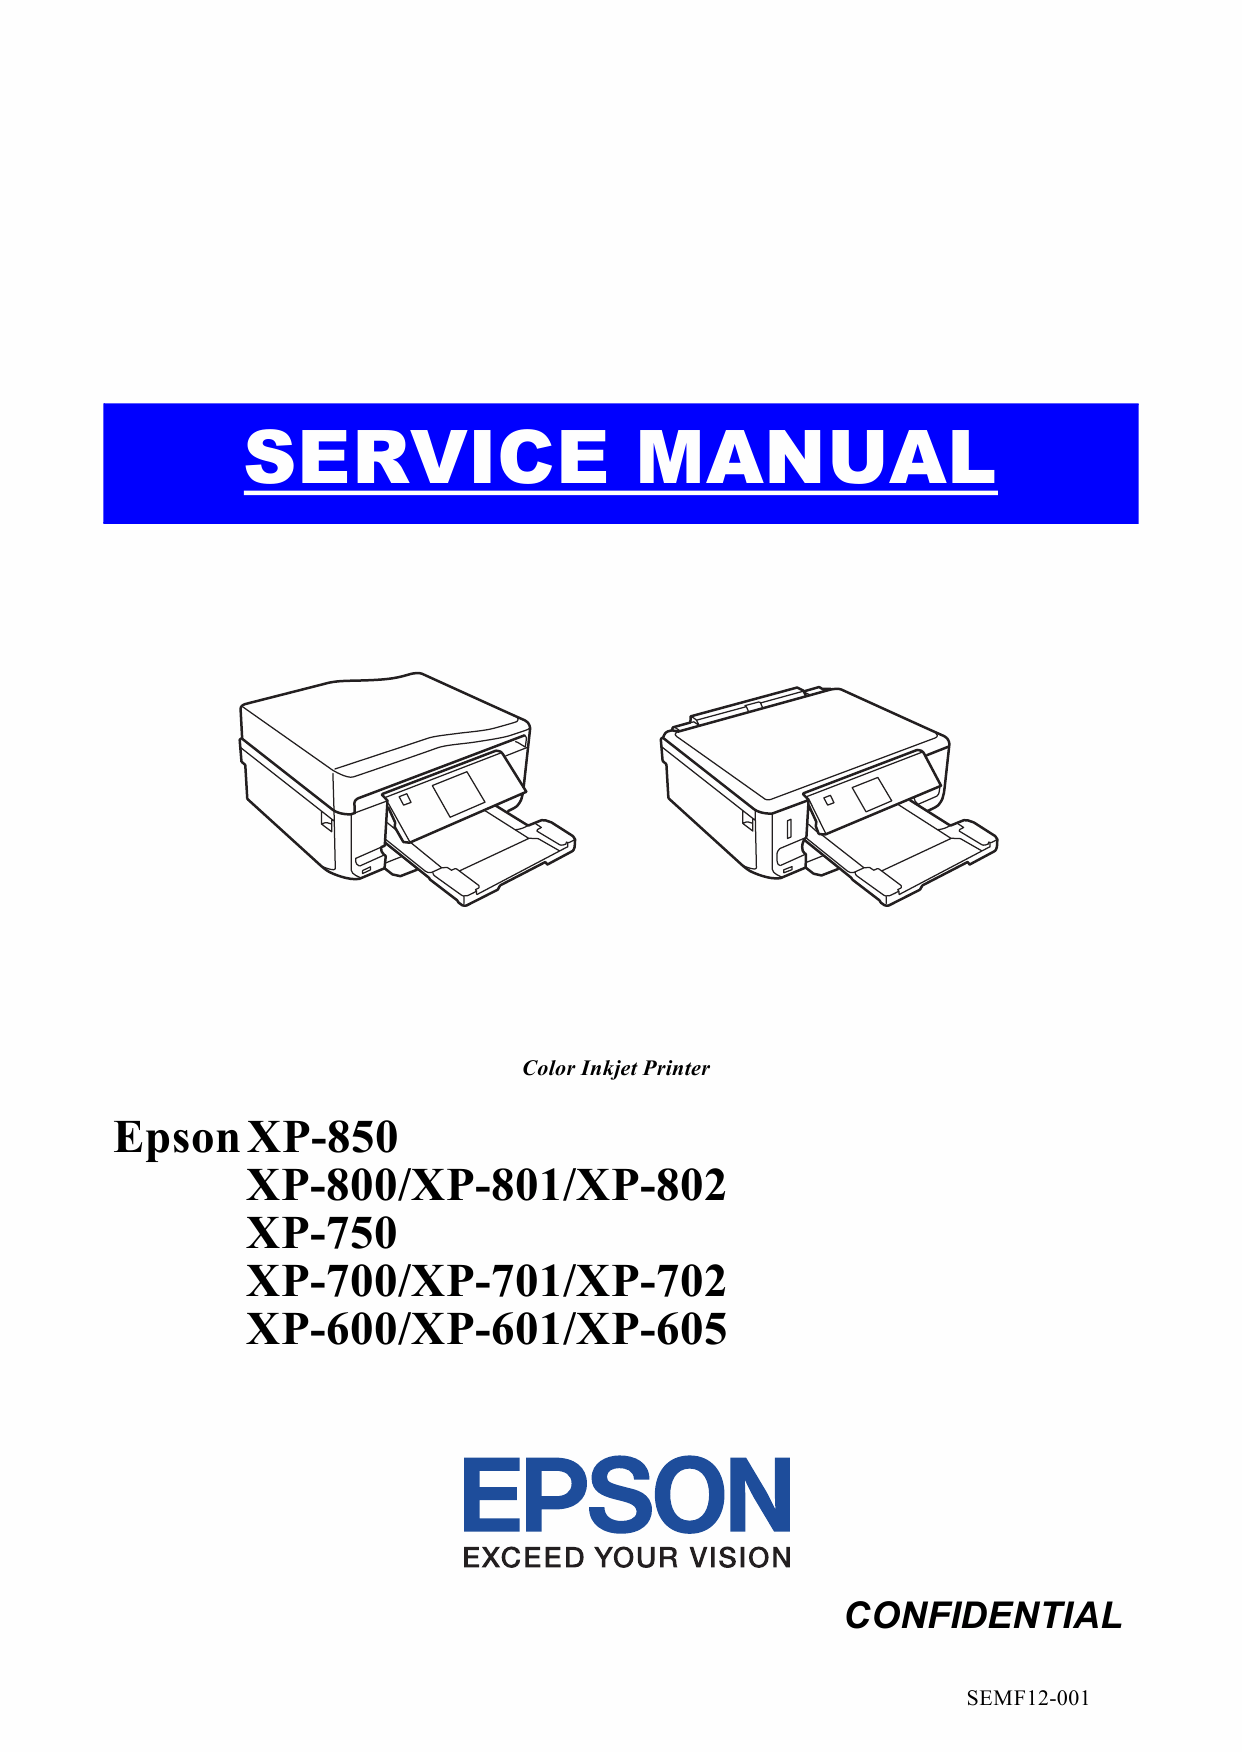 Epson XP XP600 601 605 700 701 702 750 800 801 802 850 Service Manual-1